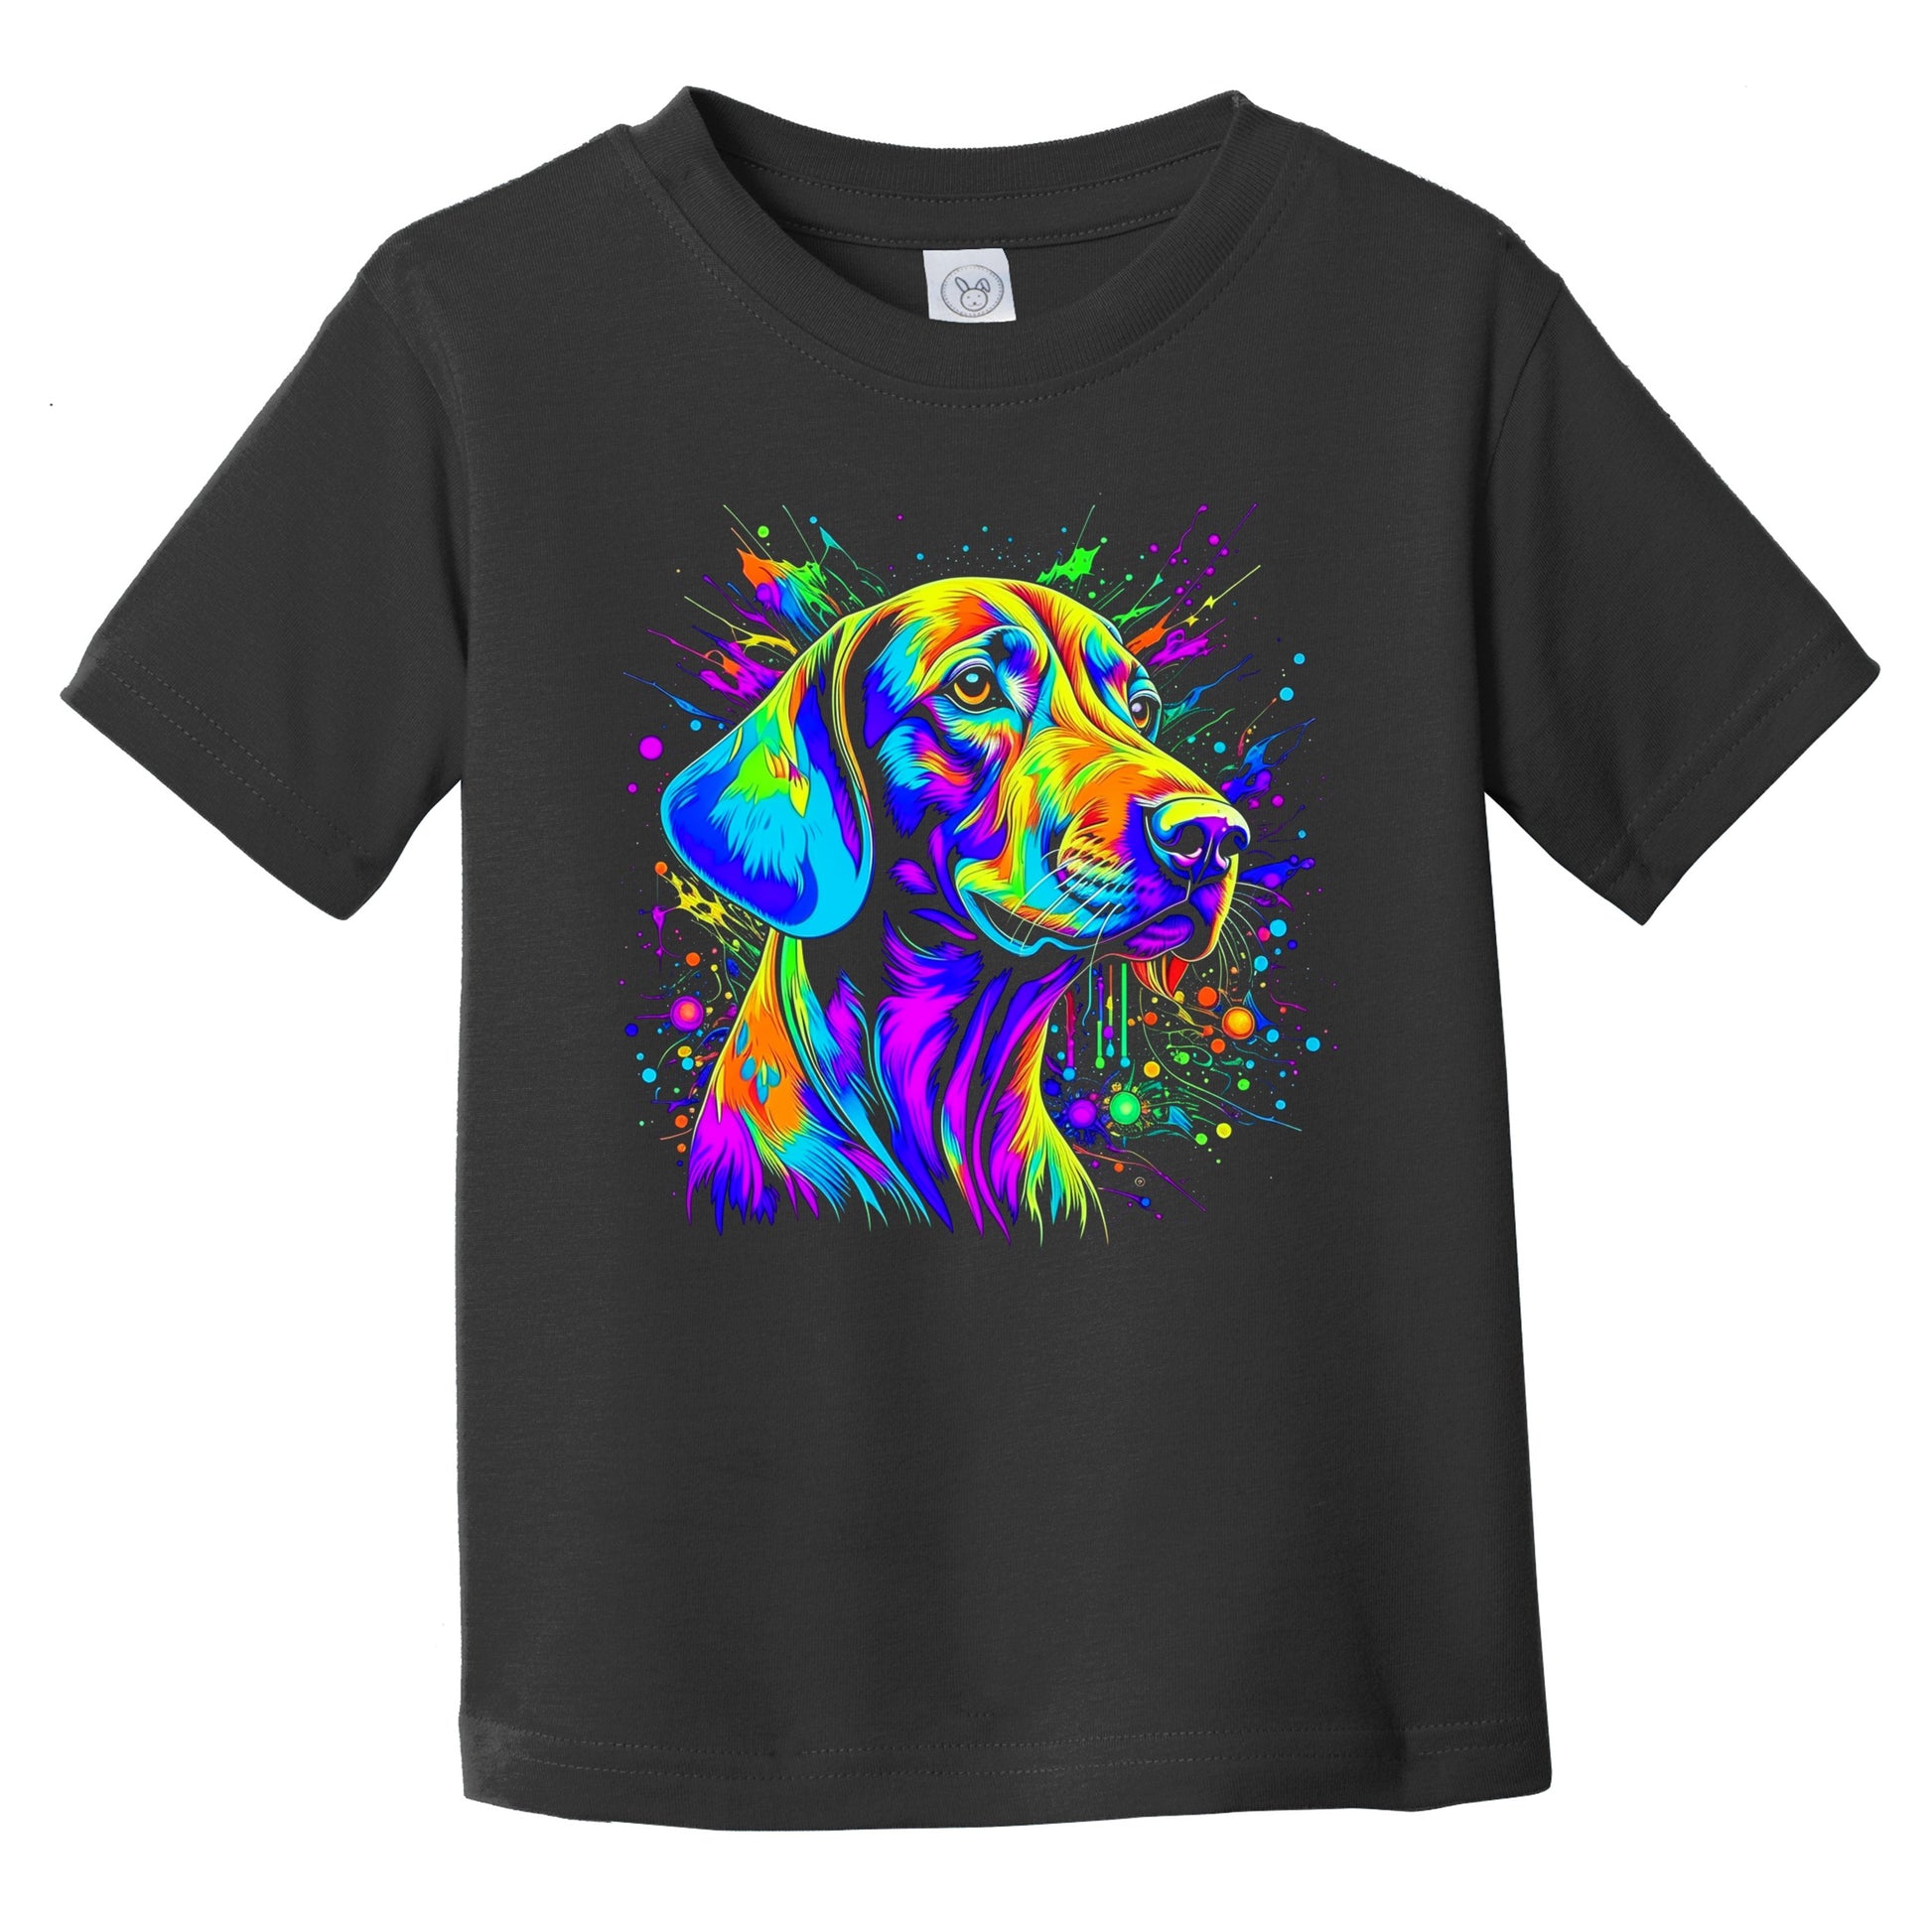 Colorful Bright Vizsla Vibrant Psychedelic Dog Art Infant Toddler T-Shirt